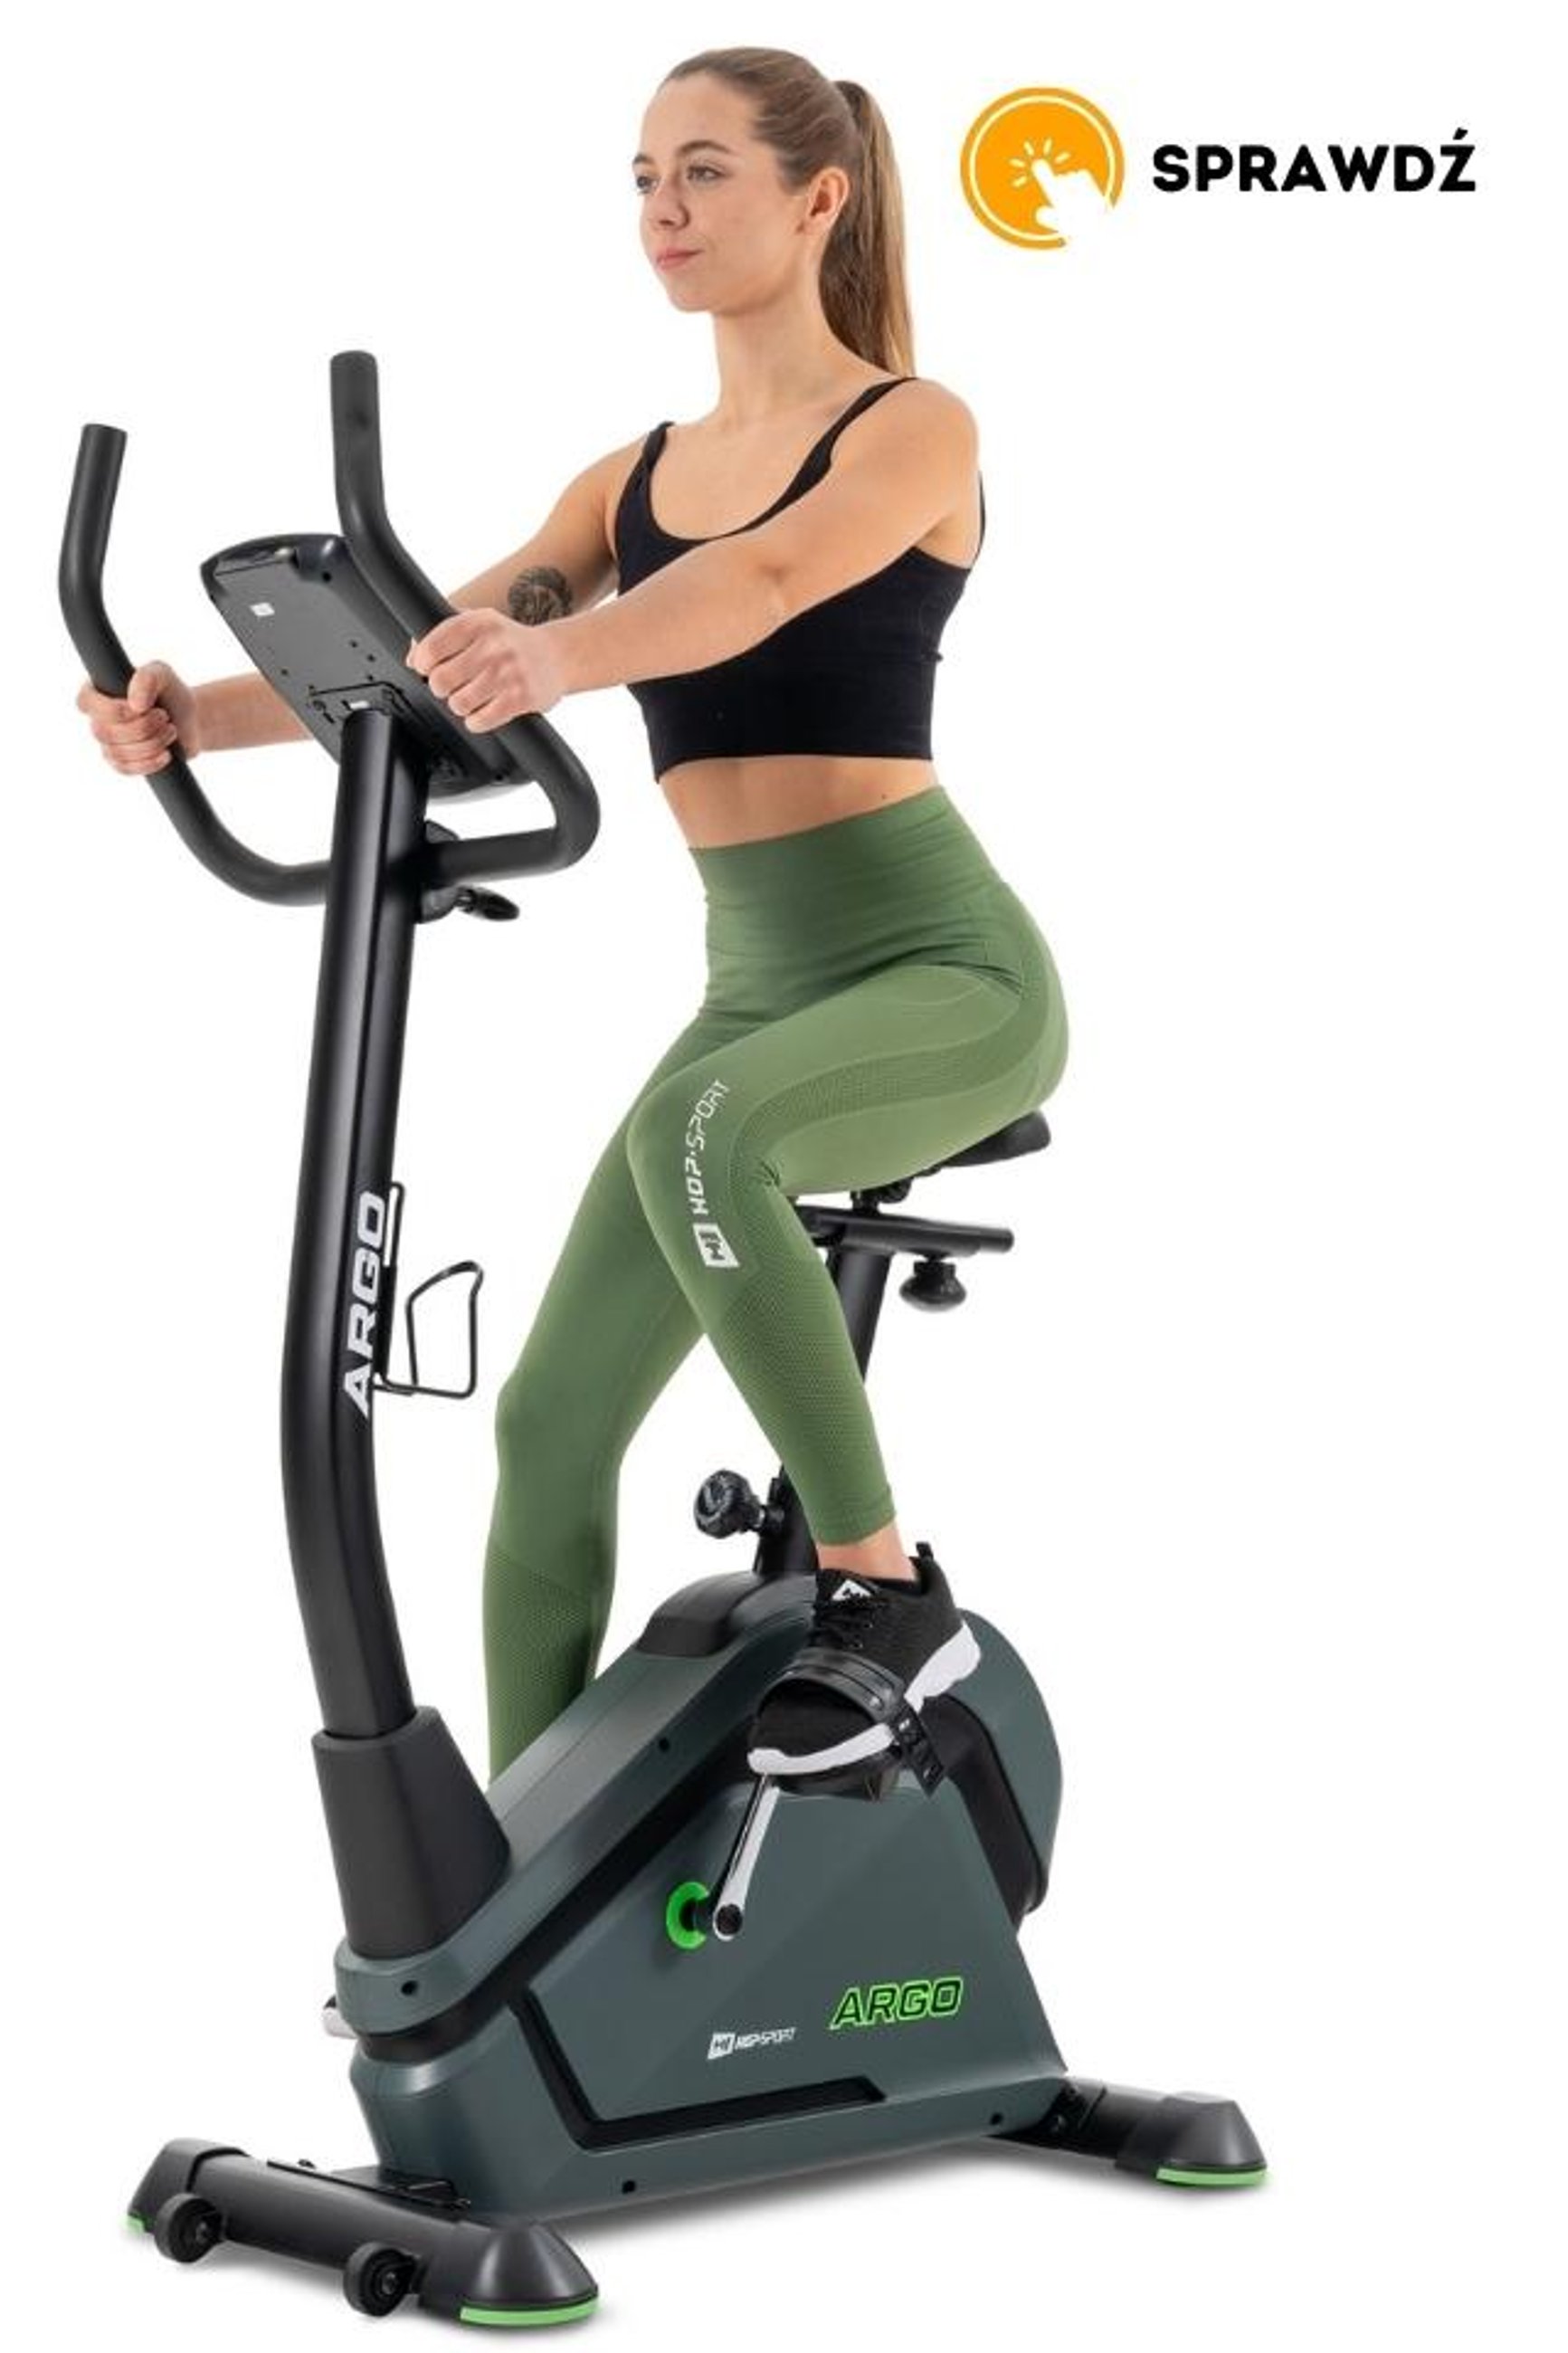 modelka ćwicząca na pionowym rowerze treningowym HS-120H Argo, marki Hop-Sport